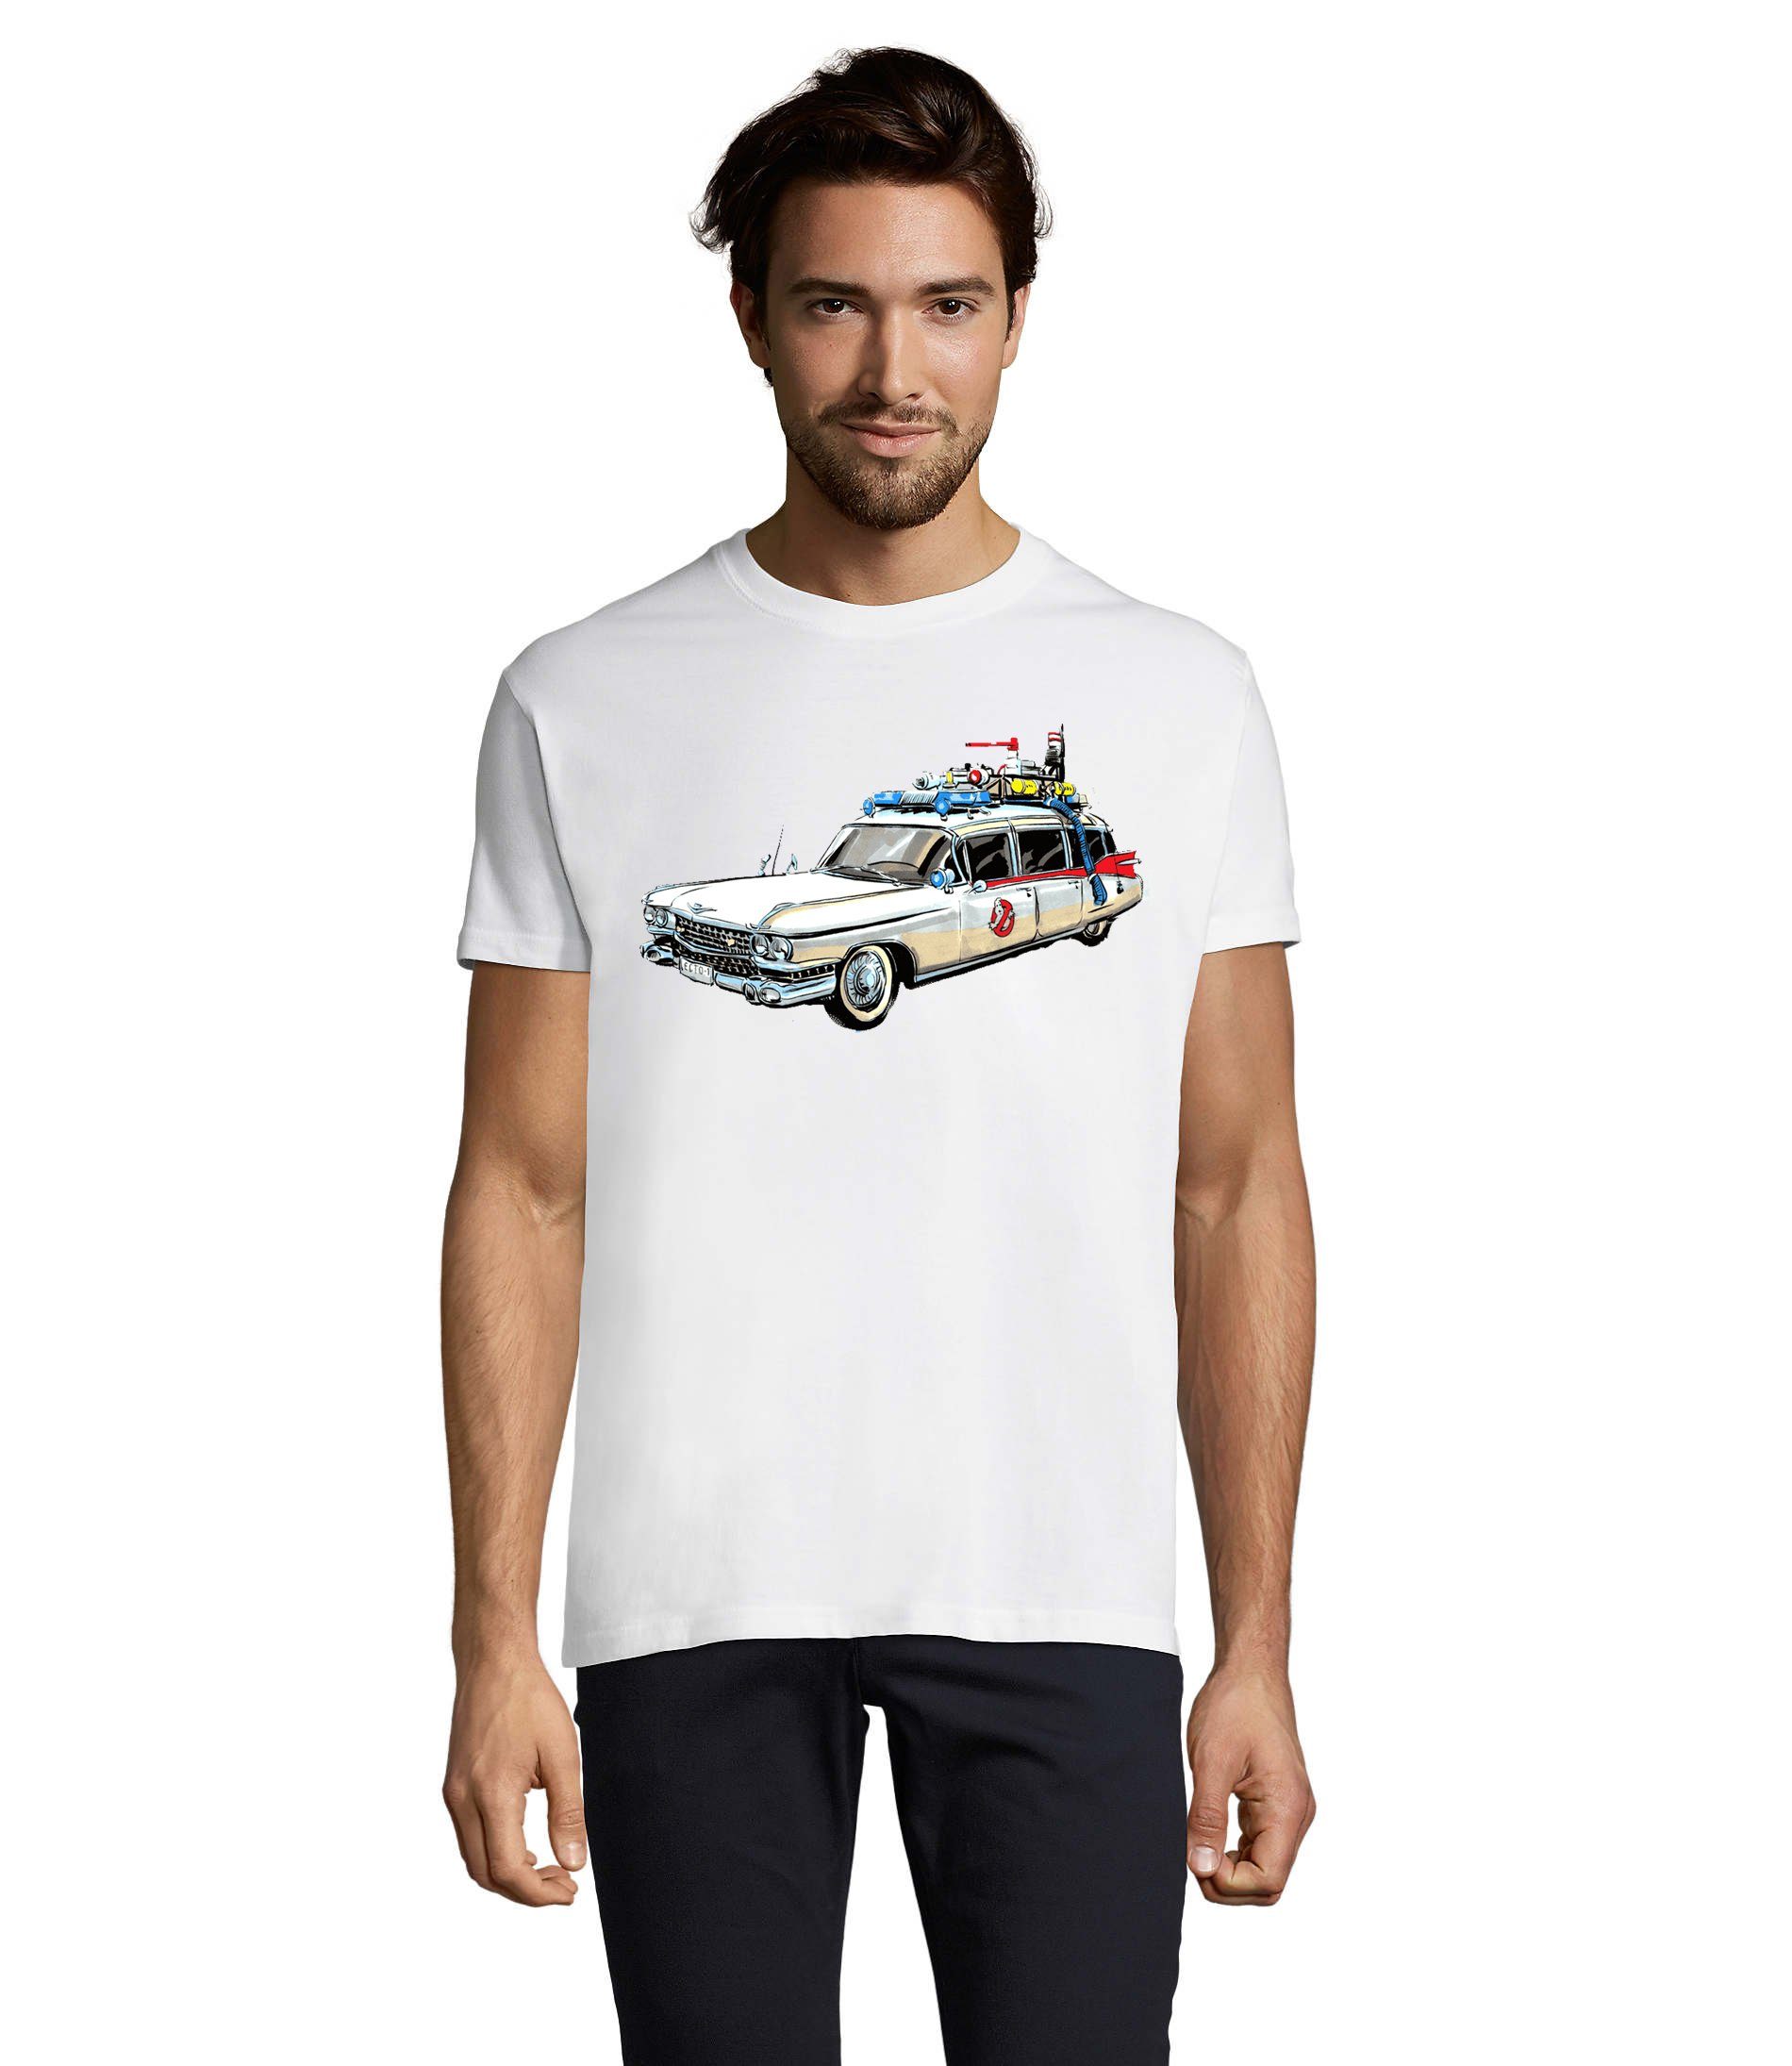 Blondie & Brownie T-Shirt Herren Ghostbusters Cars Auto Geisterjäger Geister Film Ghost Weiß | T-Shirts